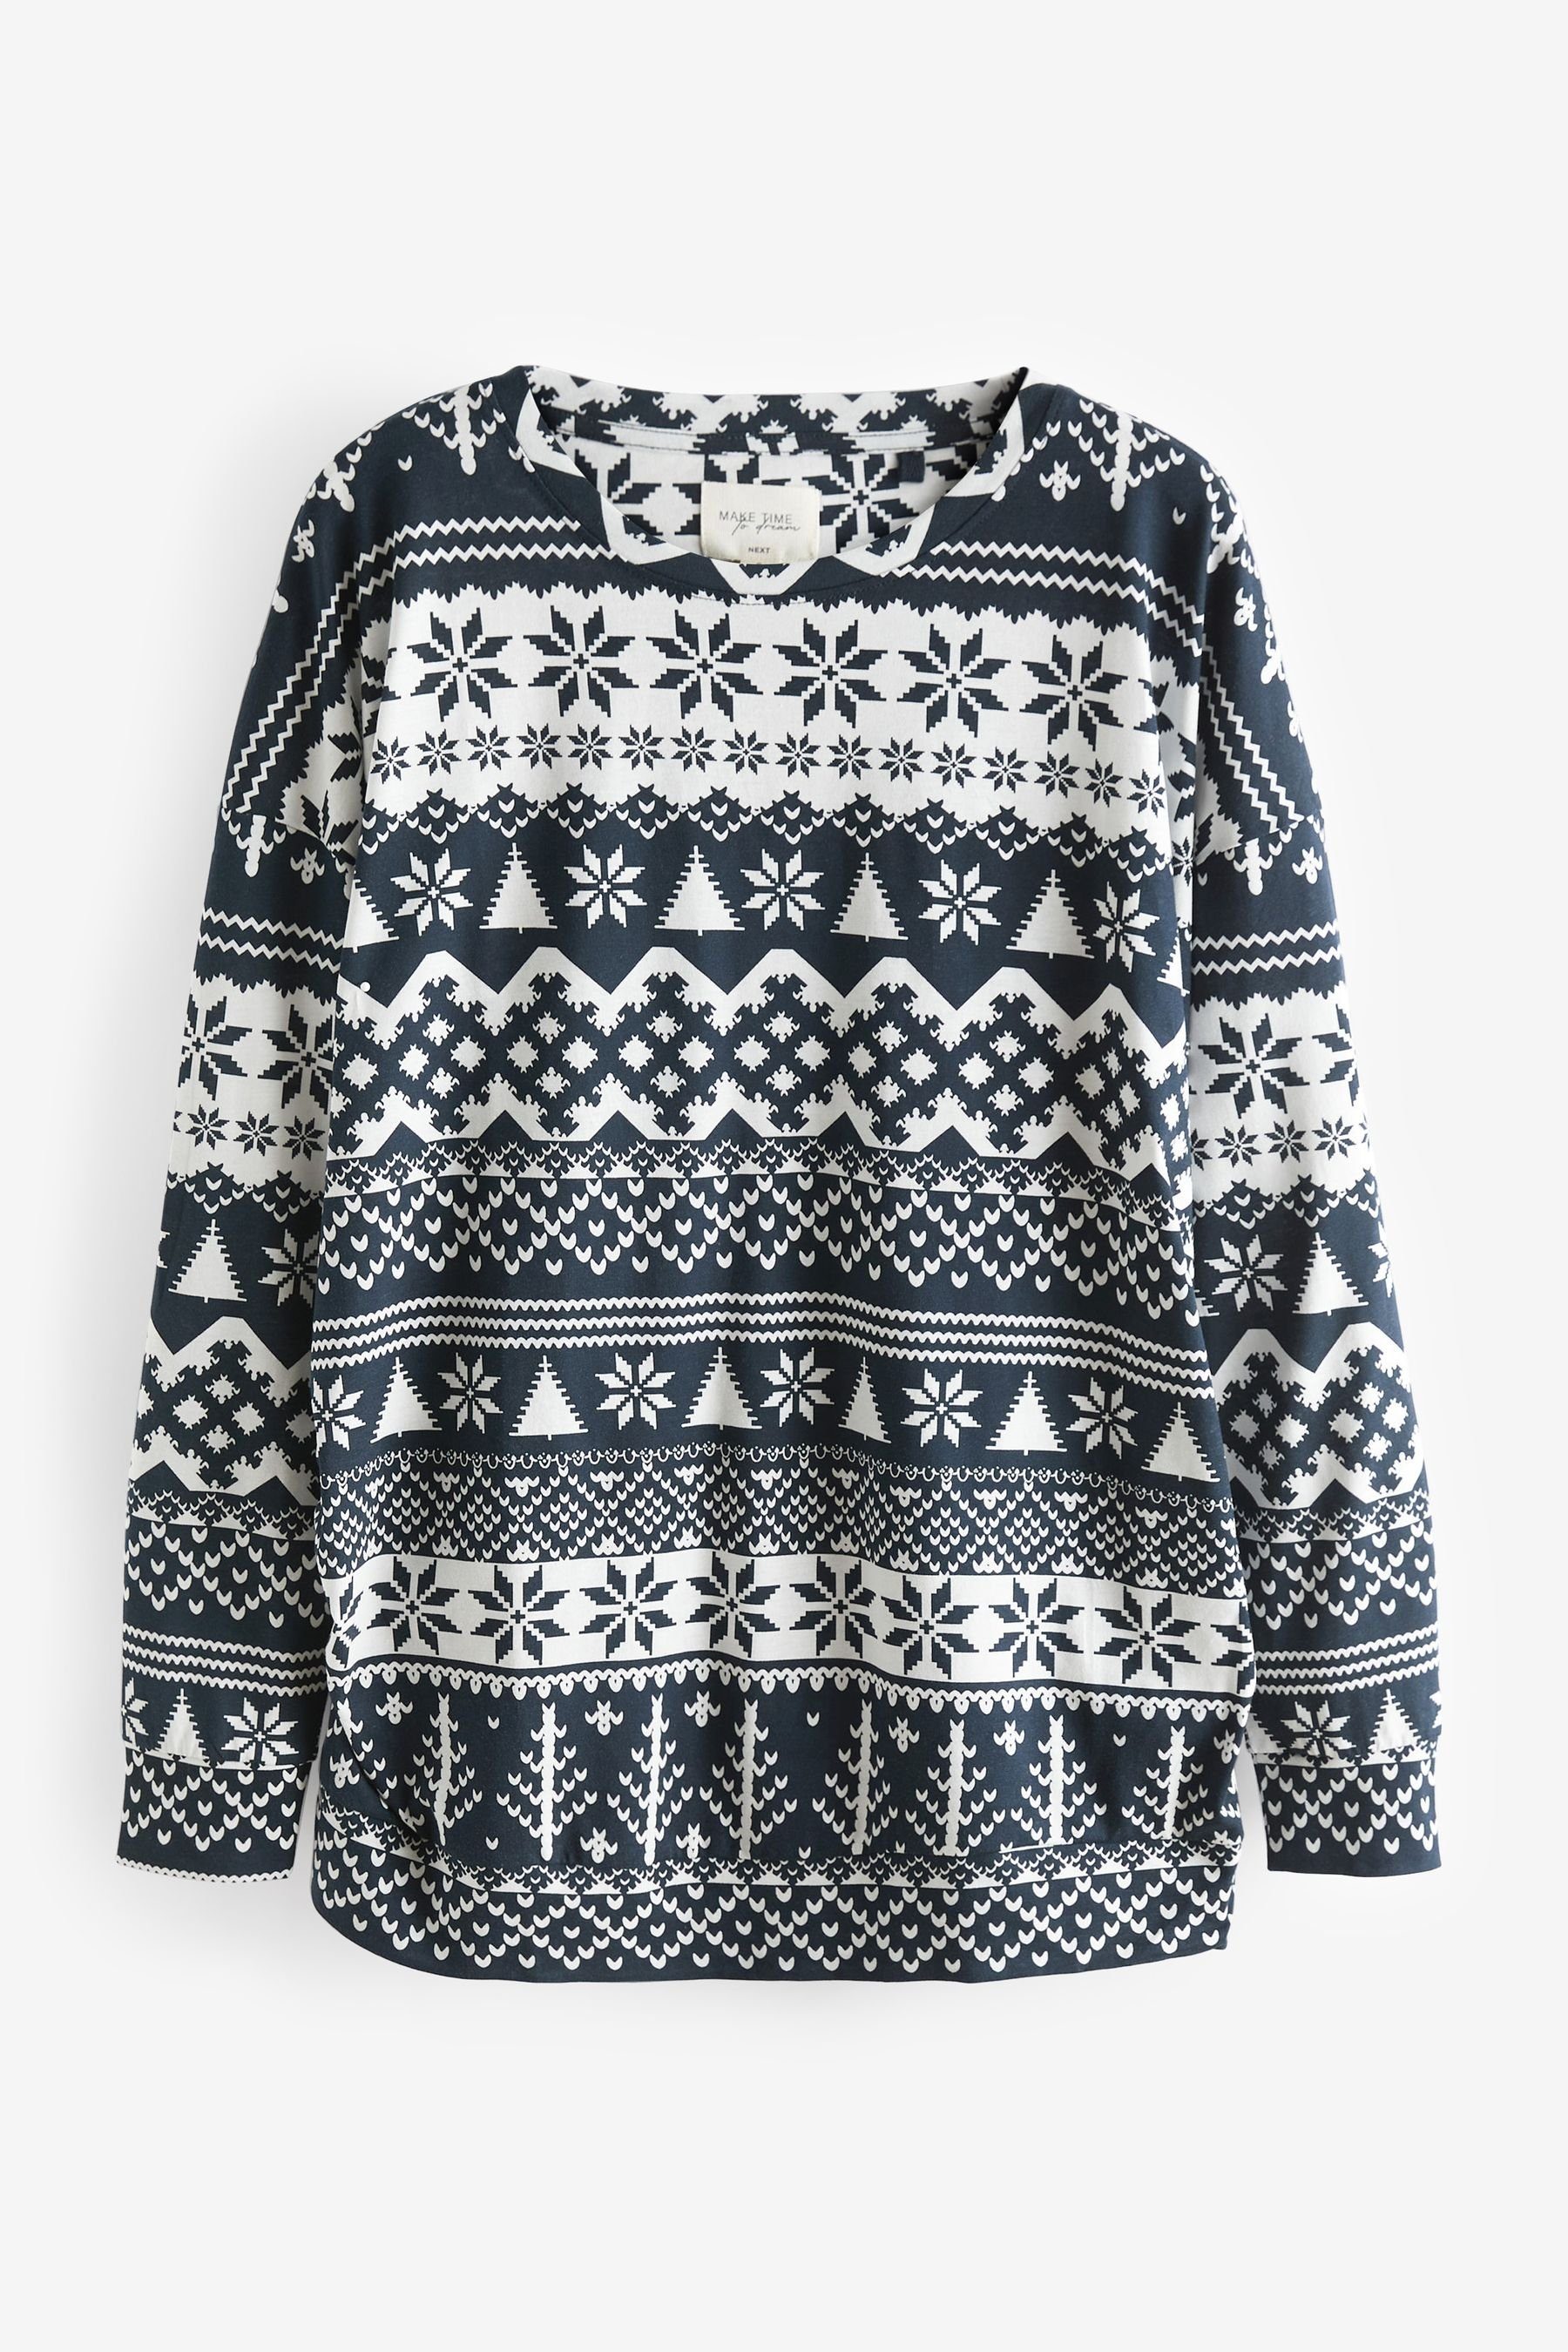 Next Umstandspyjama (2 tlg) Damen-Schlafanzug Weihnachten (Familienkollektion)